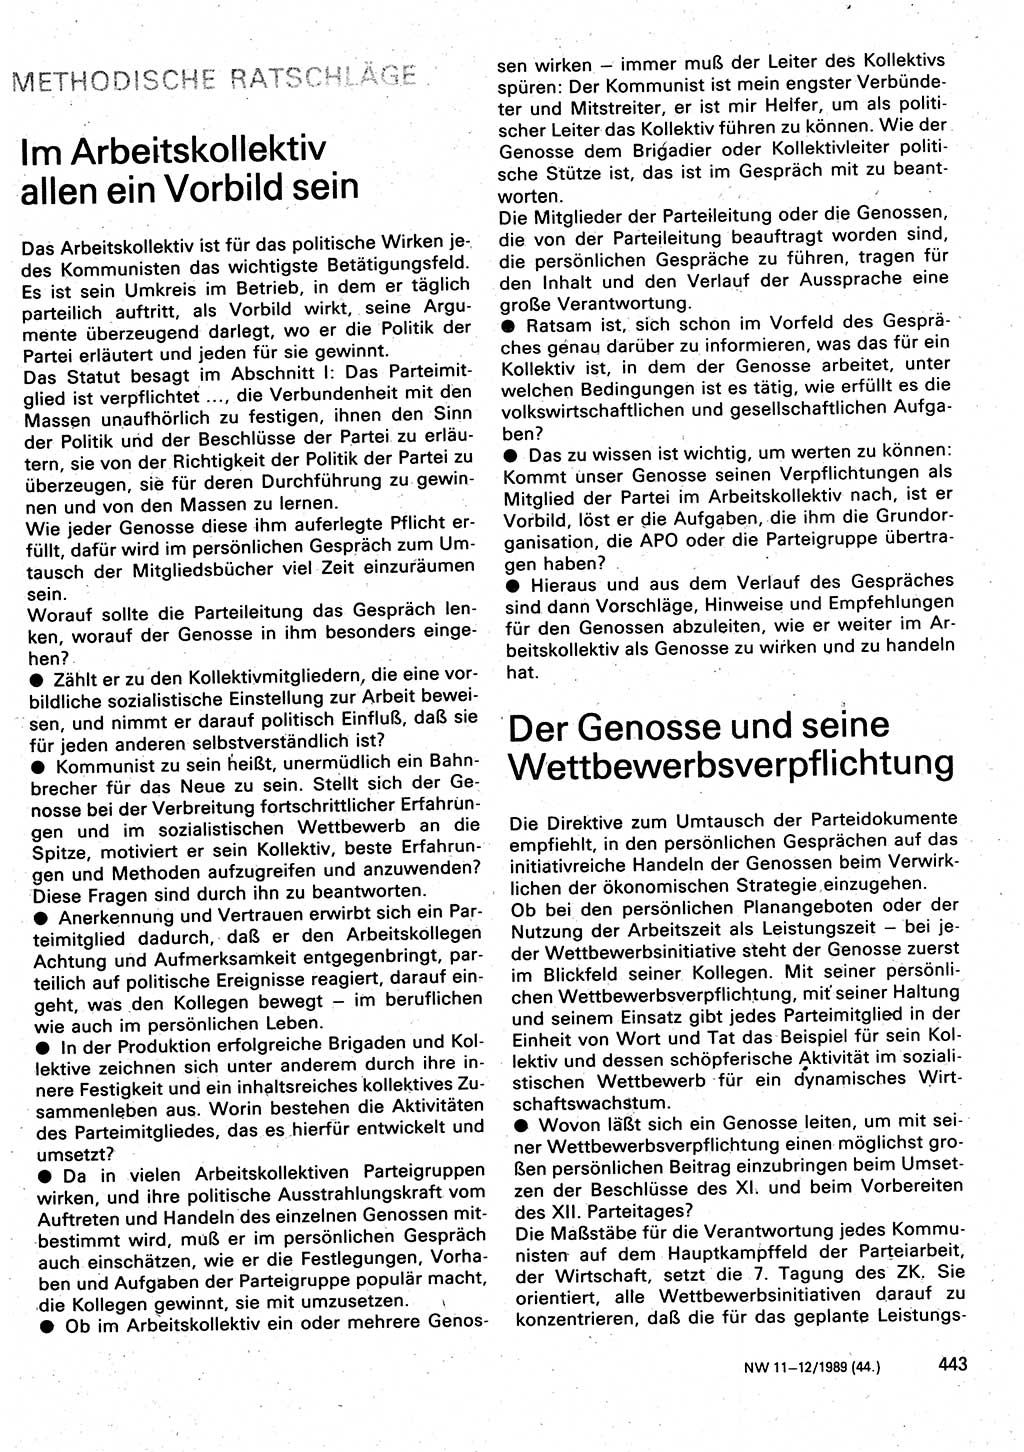 Neuer Weg (NW), Organ des Zentralkomitees (ZK) der SED (Sozialistische Einheitspartei Deutschlands) für Fragen des Parteilebens, 44. Jahrgang [Deutsche Demokratische Republik (DDR)] 1989, Seite 443 (NW ZK SED DDR 1989, S. 443)